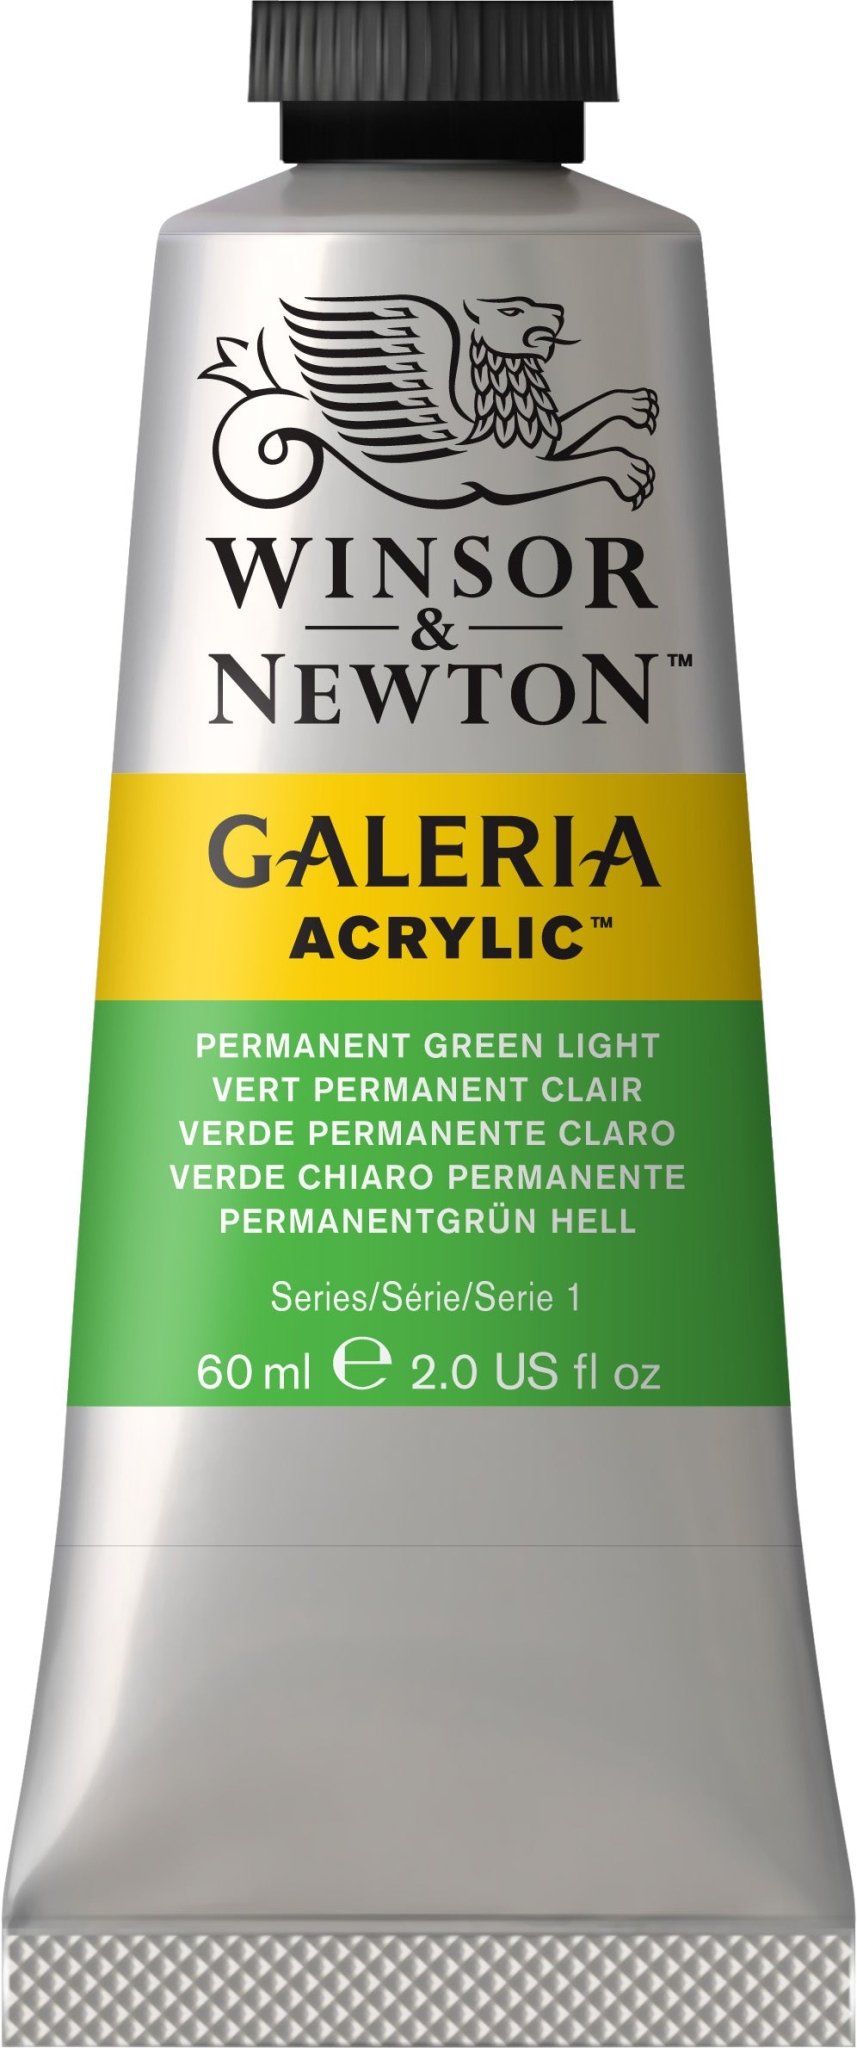 W & N Galeria Acrylic 60ml Permanent Green Light - theartshop.com.au